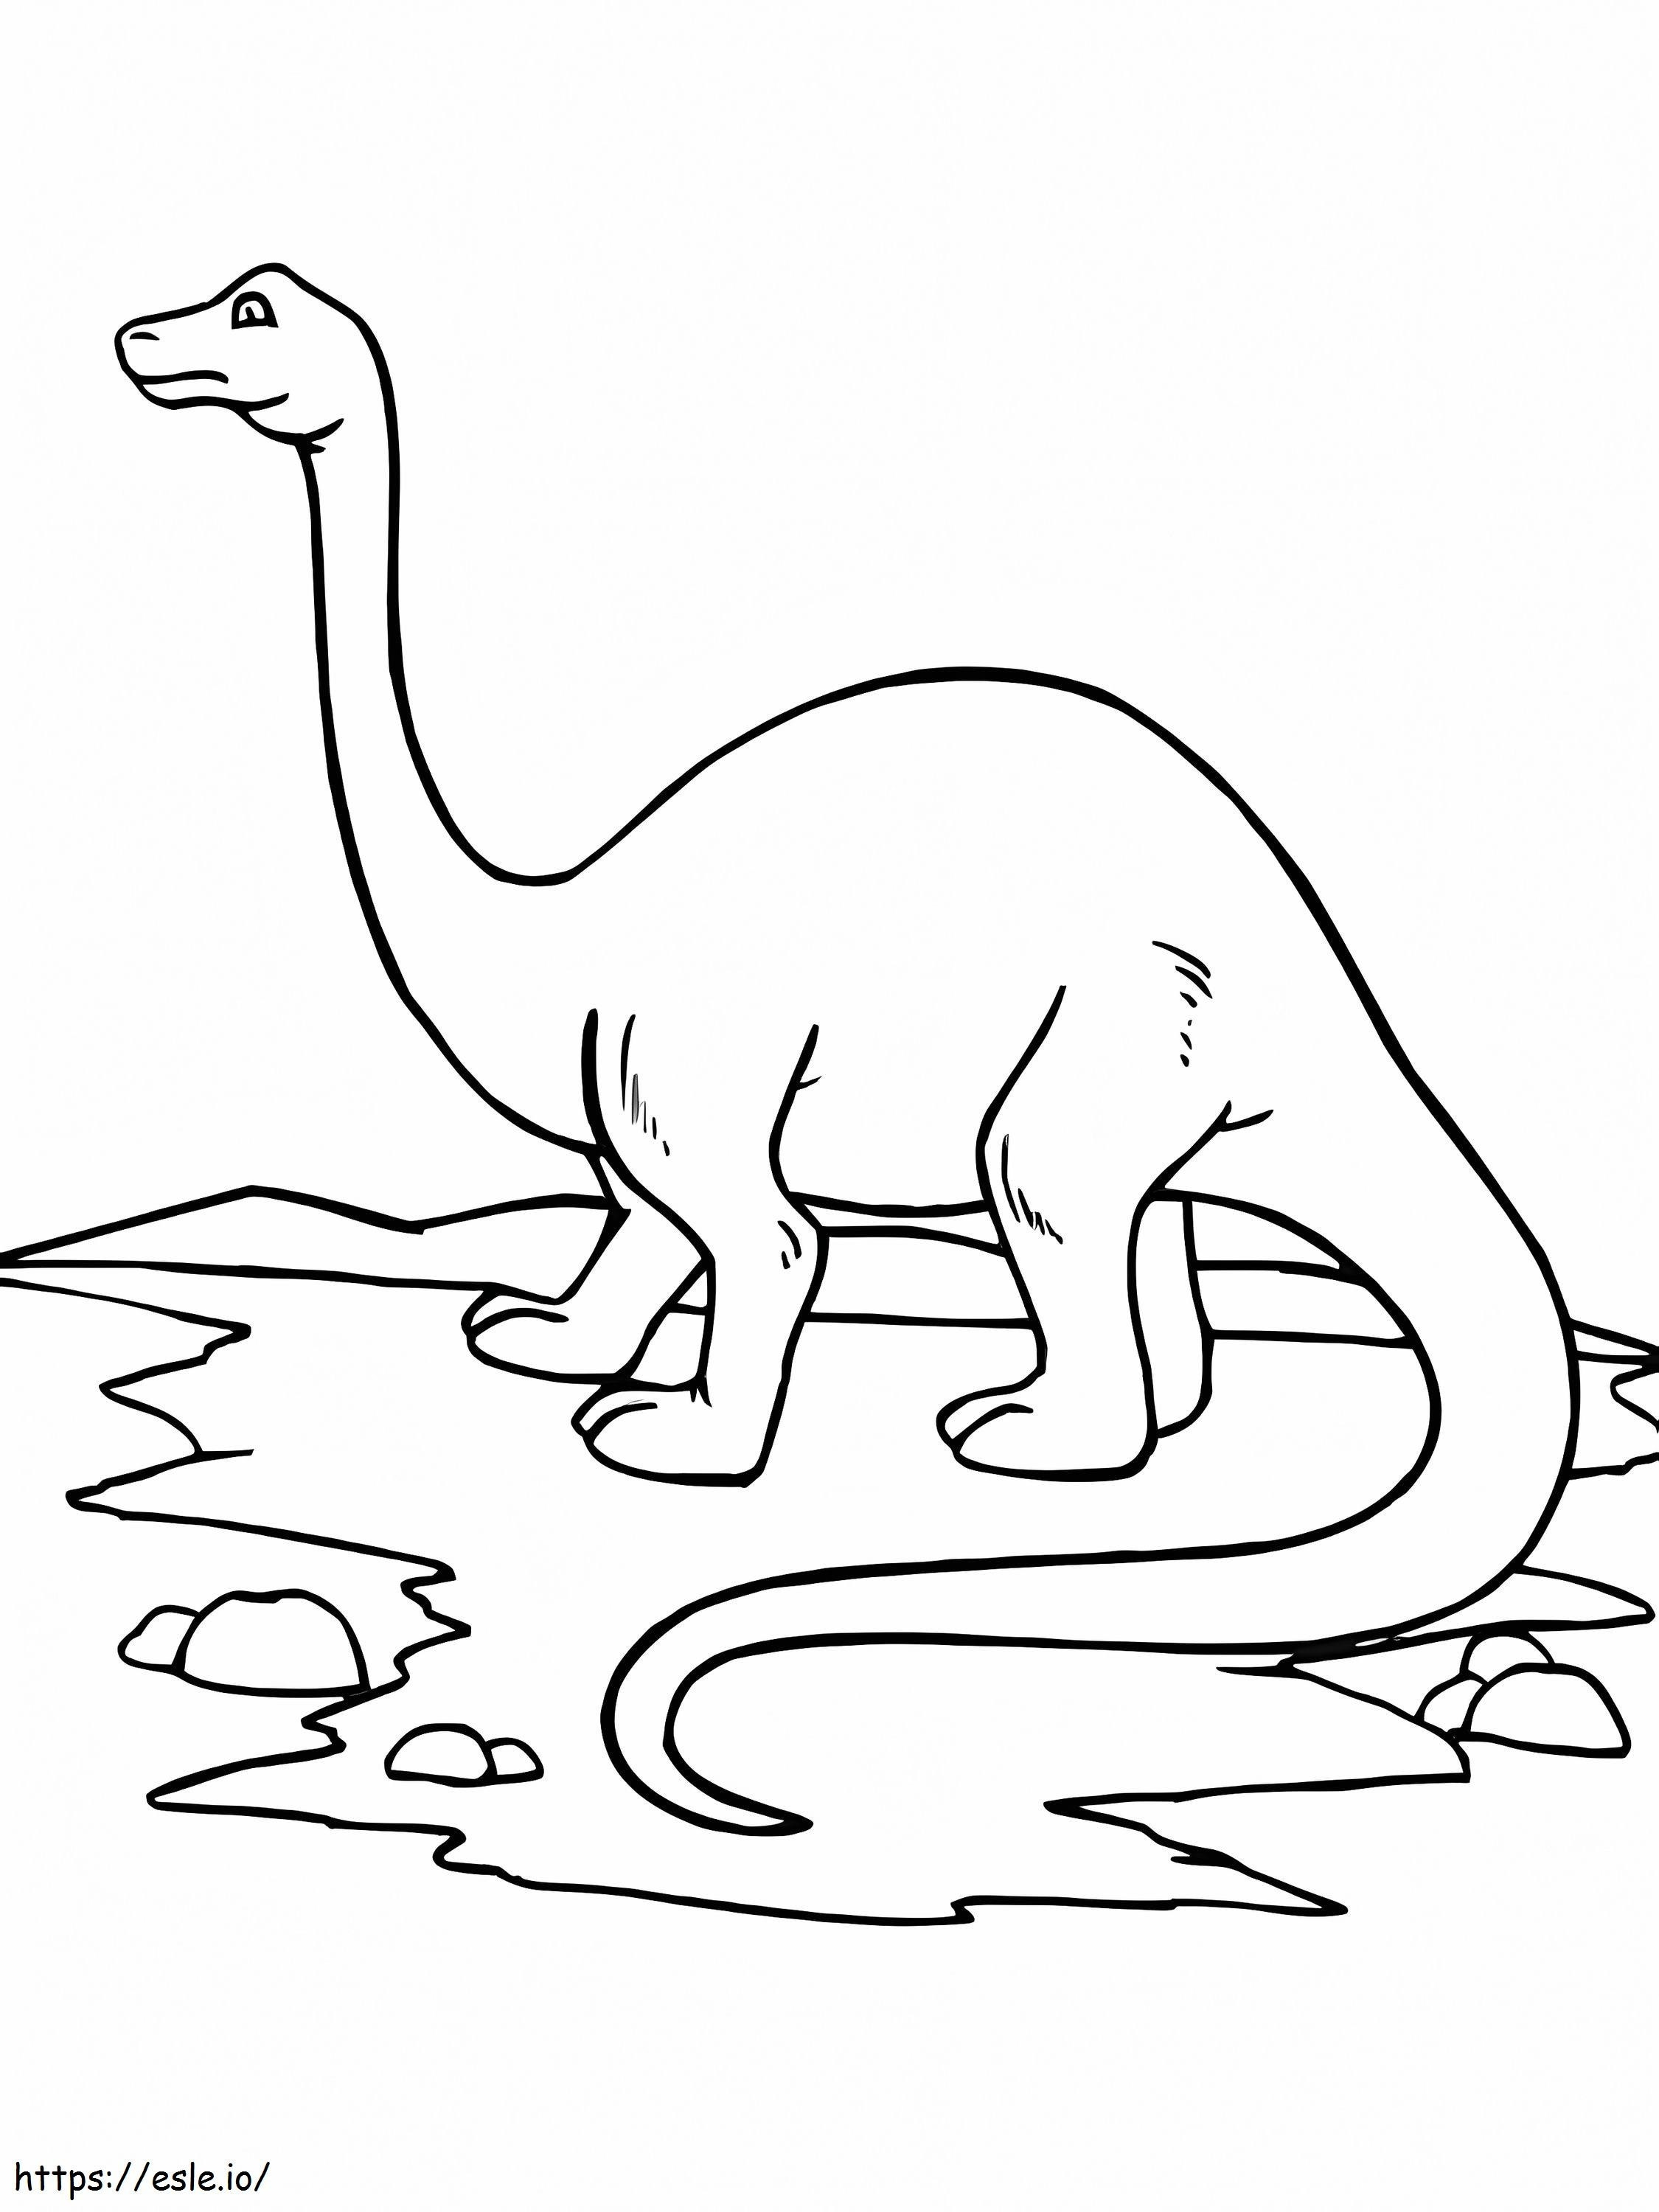 Brontosaurio 2 para colorear